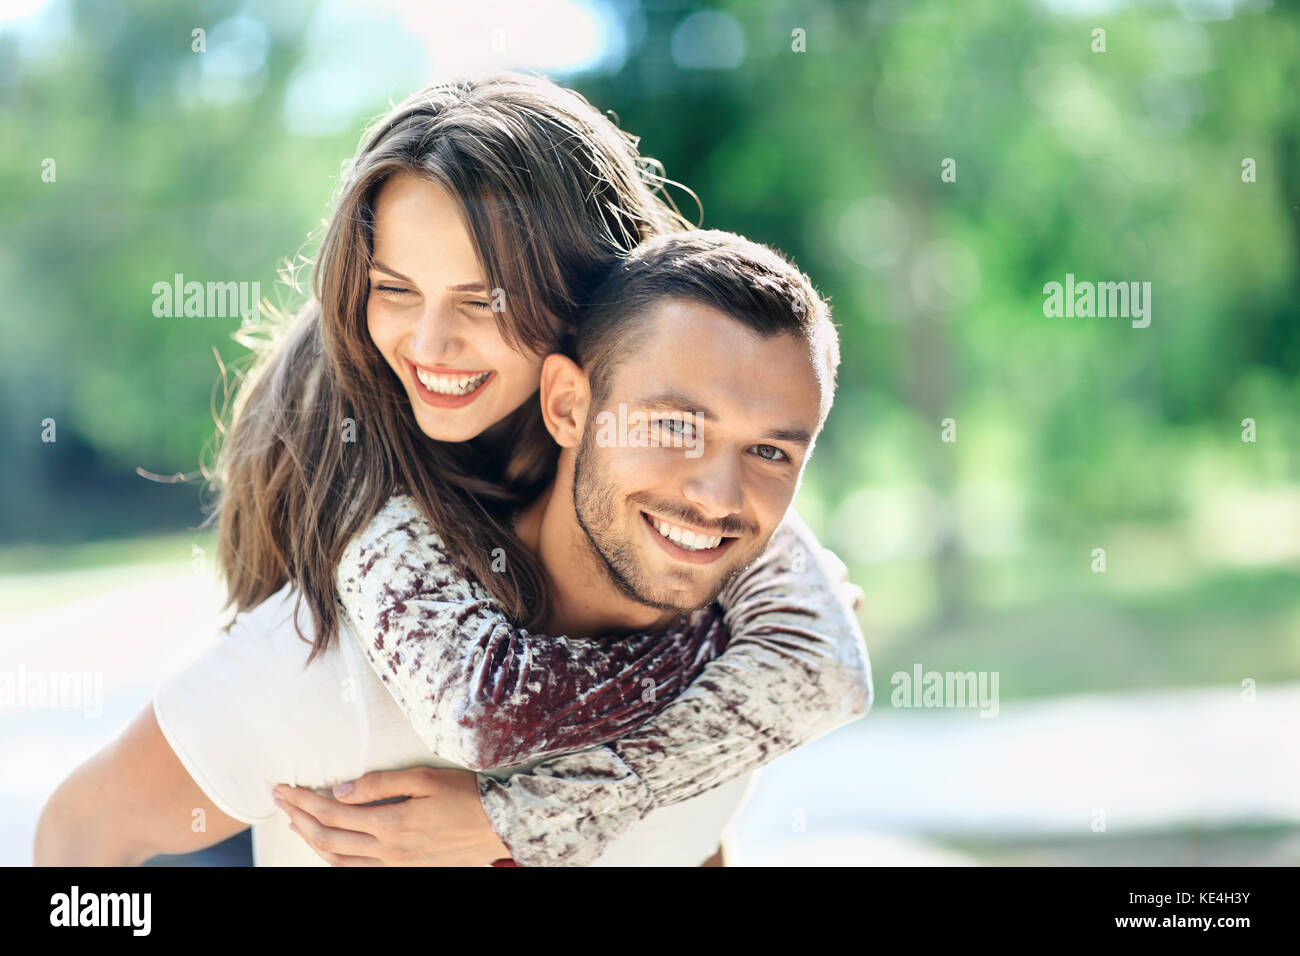 Im freien Portrait von Liebhaber glücklich, junger Mann und Frau an der Kamera schaut. Lächelnde Mädchen huckepack von ihrem Freund. Liebe, Jugend, Beziehung Konzept ph Stockfoto